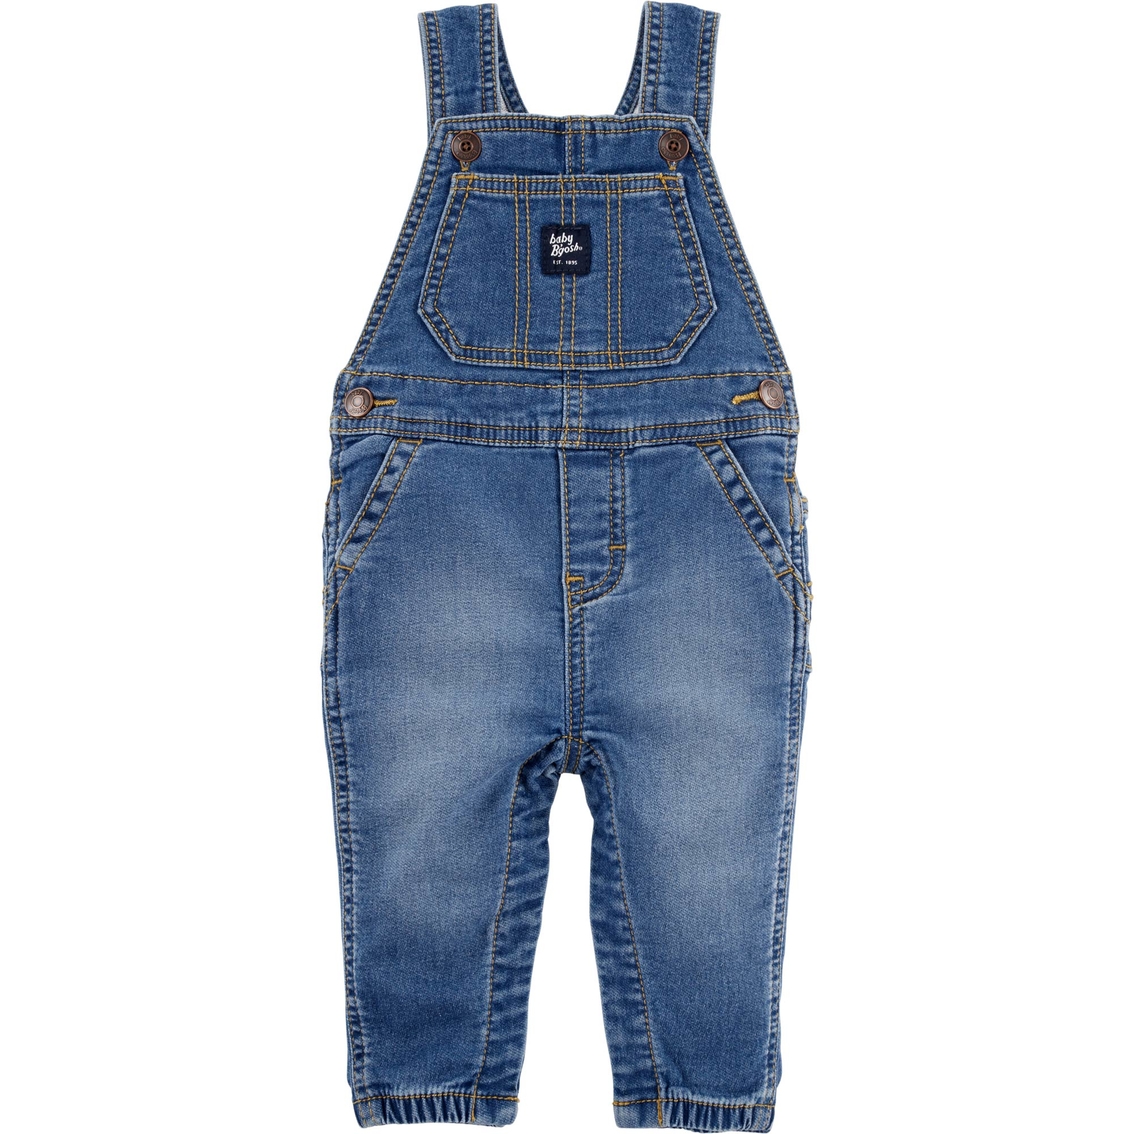 Oshkosh B'gosh Infant Boys Knit Denim Overalls | Baby Boy 0-24 Months ...